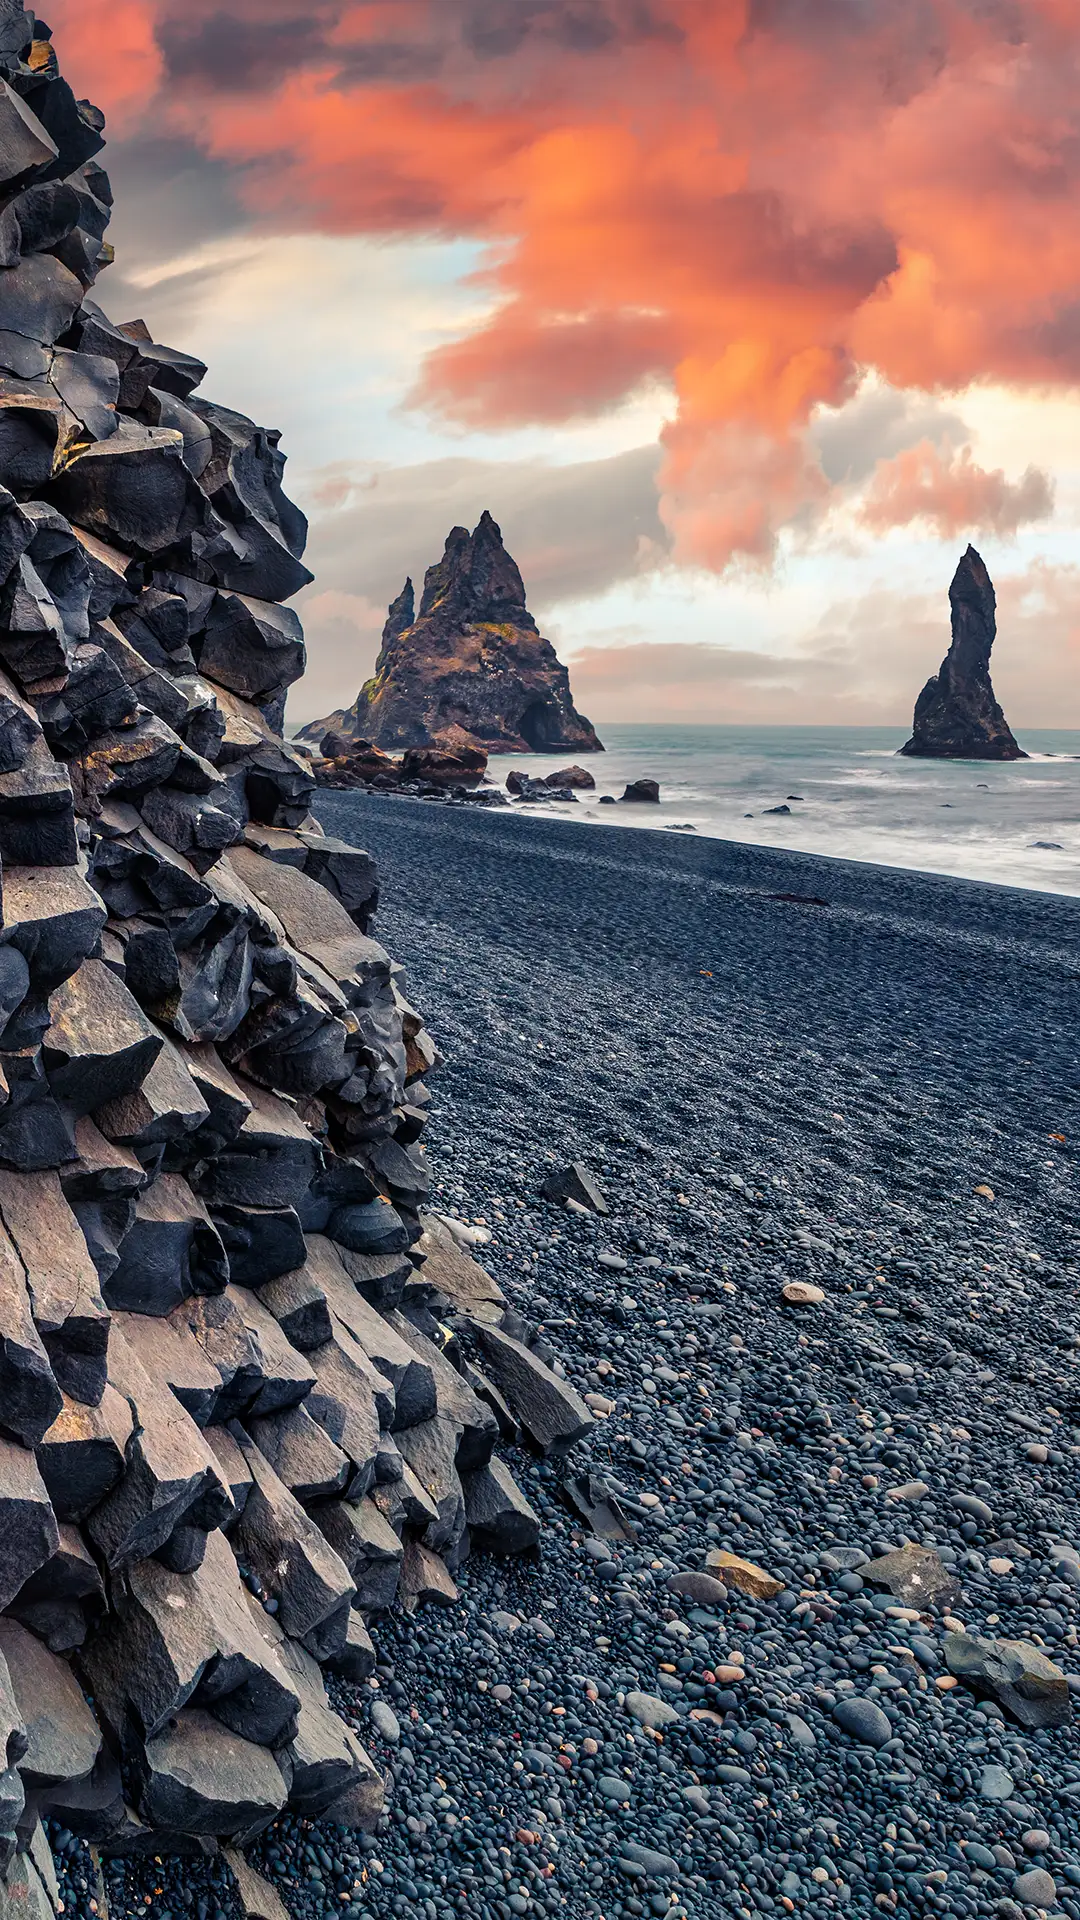 Sunset on Reynisdrangar cliffs in Iceland.